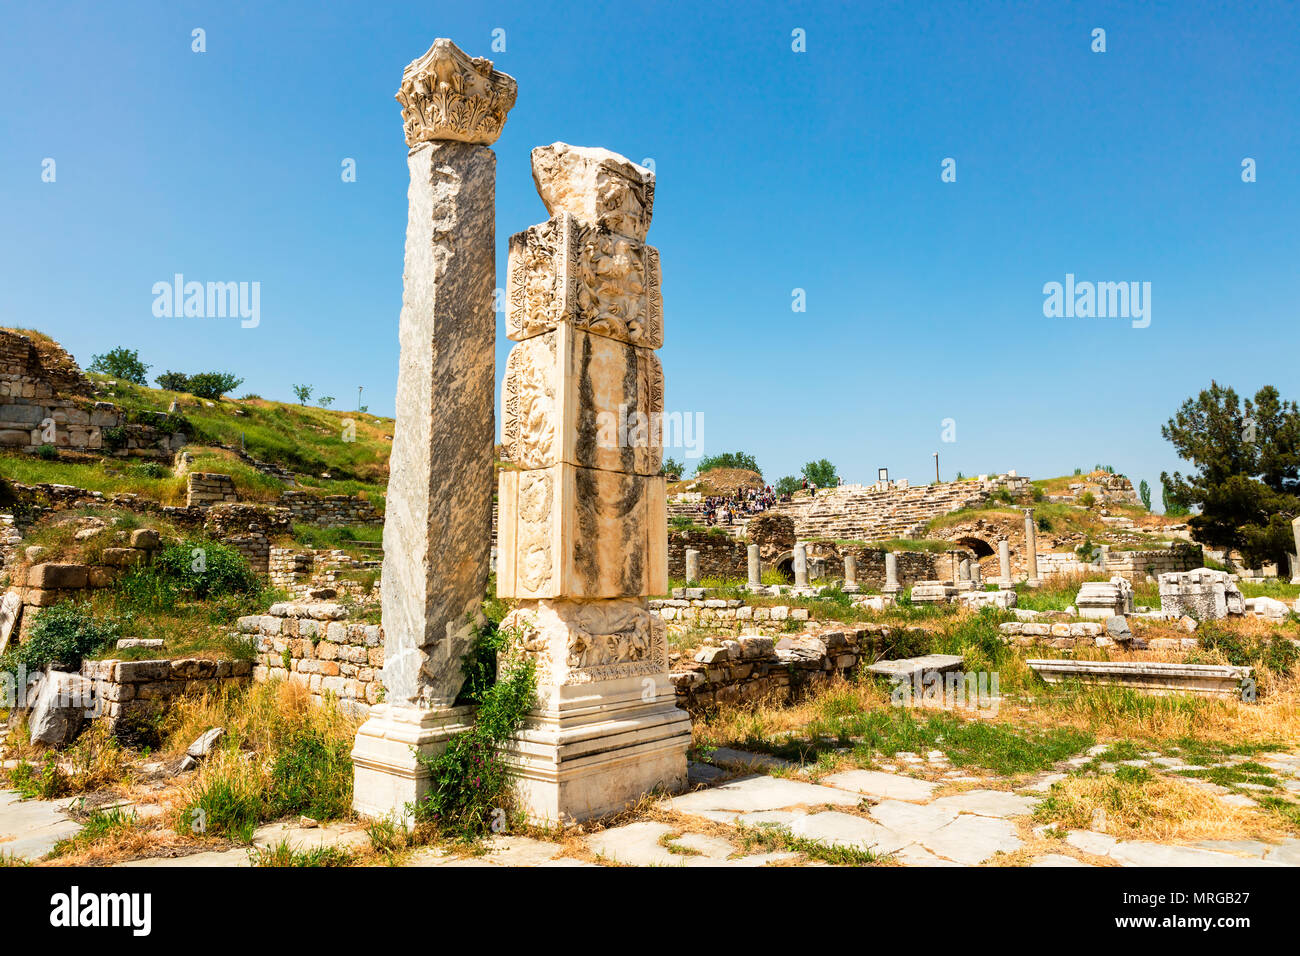 Sito archeologico di Helenistic città di Aphrodisias in Anatolia occidentale, Turchia. Foto Stock